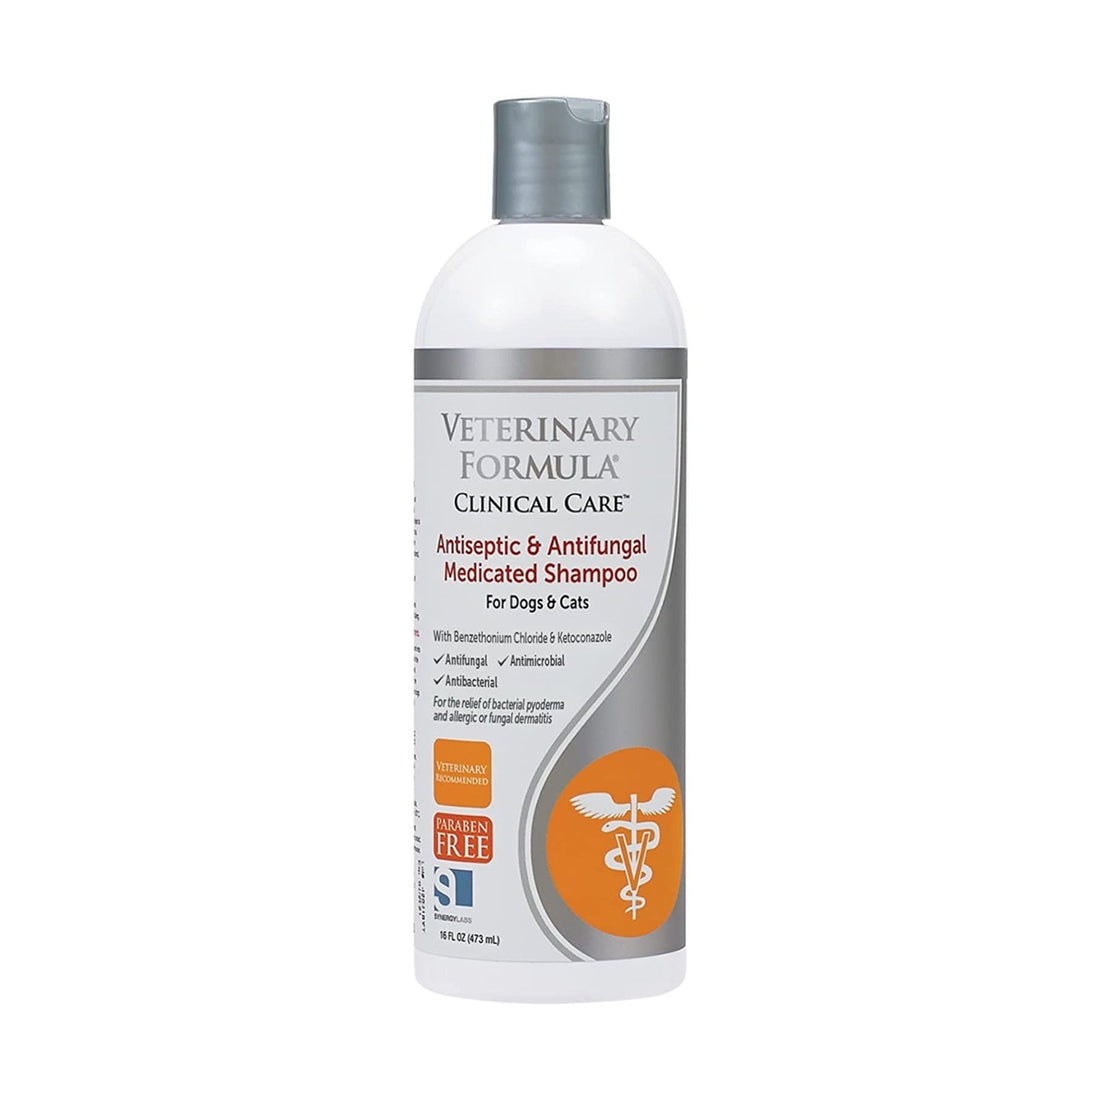 【Synergy Labs】Veterinary Formula Antiseptic & Antifungal Medicated Shampoo - 16 oz